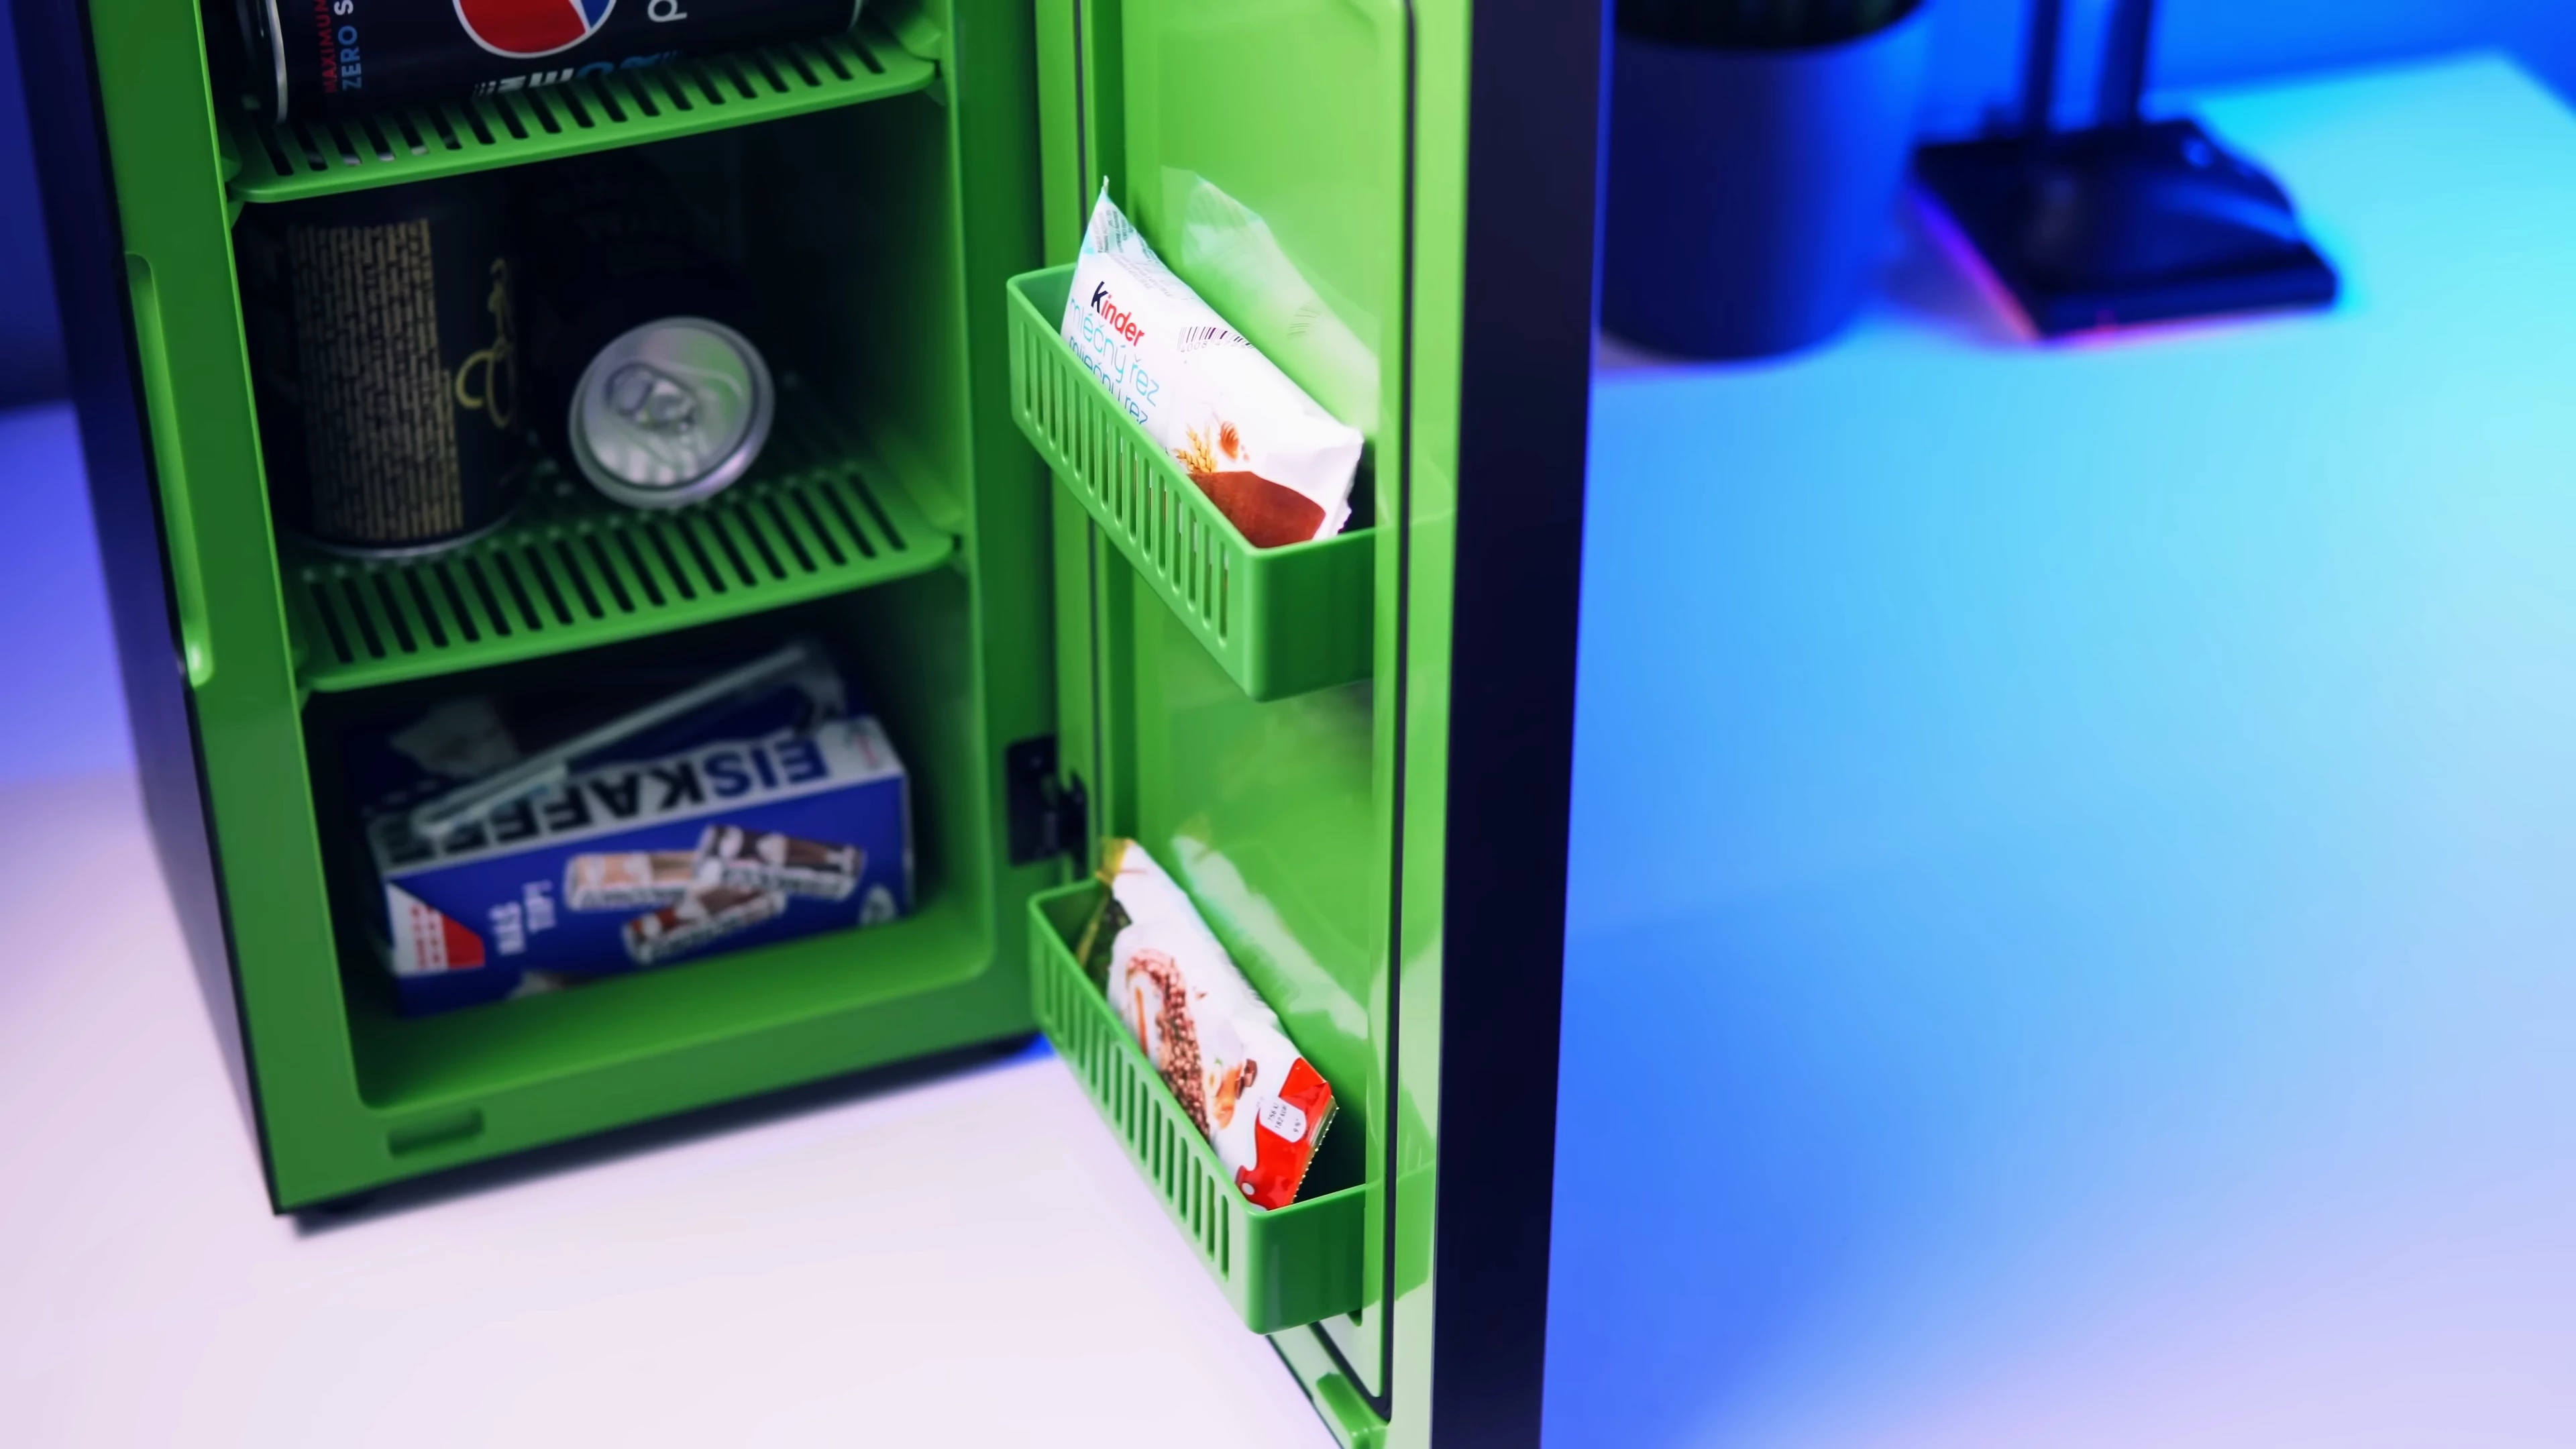 Xbox Mini Fridge [recenze]: Úžasná lednice pro hráče? 